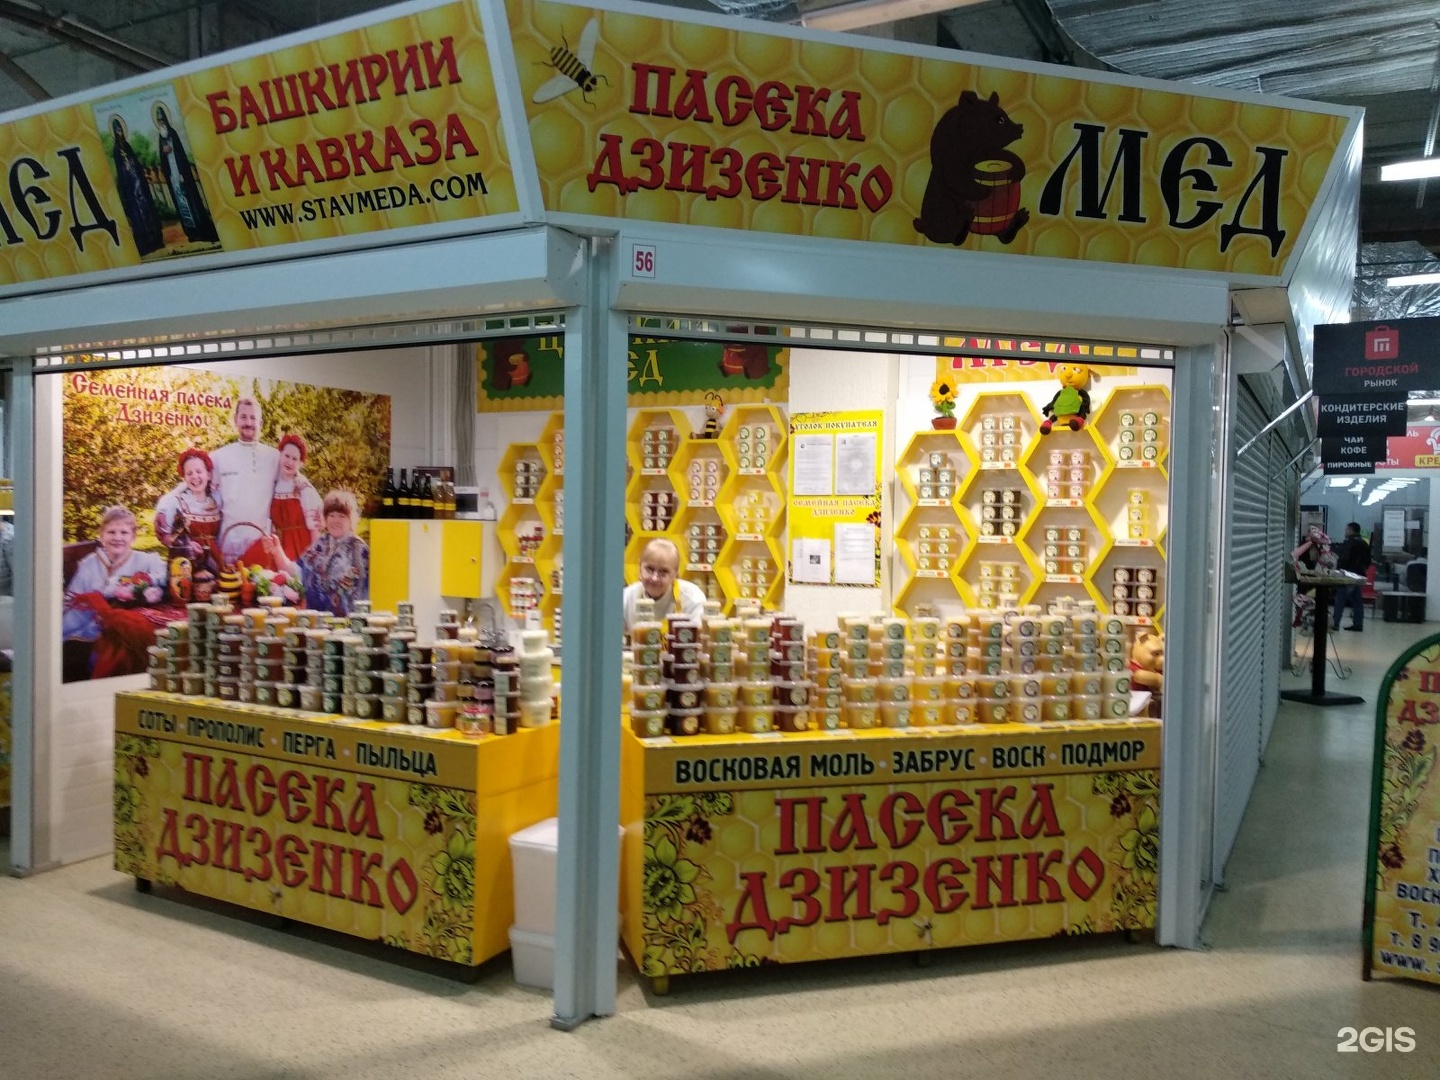 Пасека Дзизенко Ставрополь. Магазин товаров для пчеловодства. Вывеска продукты пчеловодства. Магазин продуктов пчеловодства